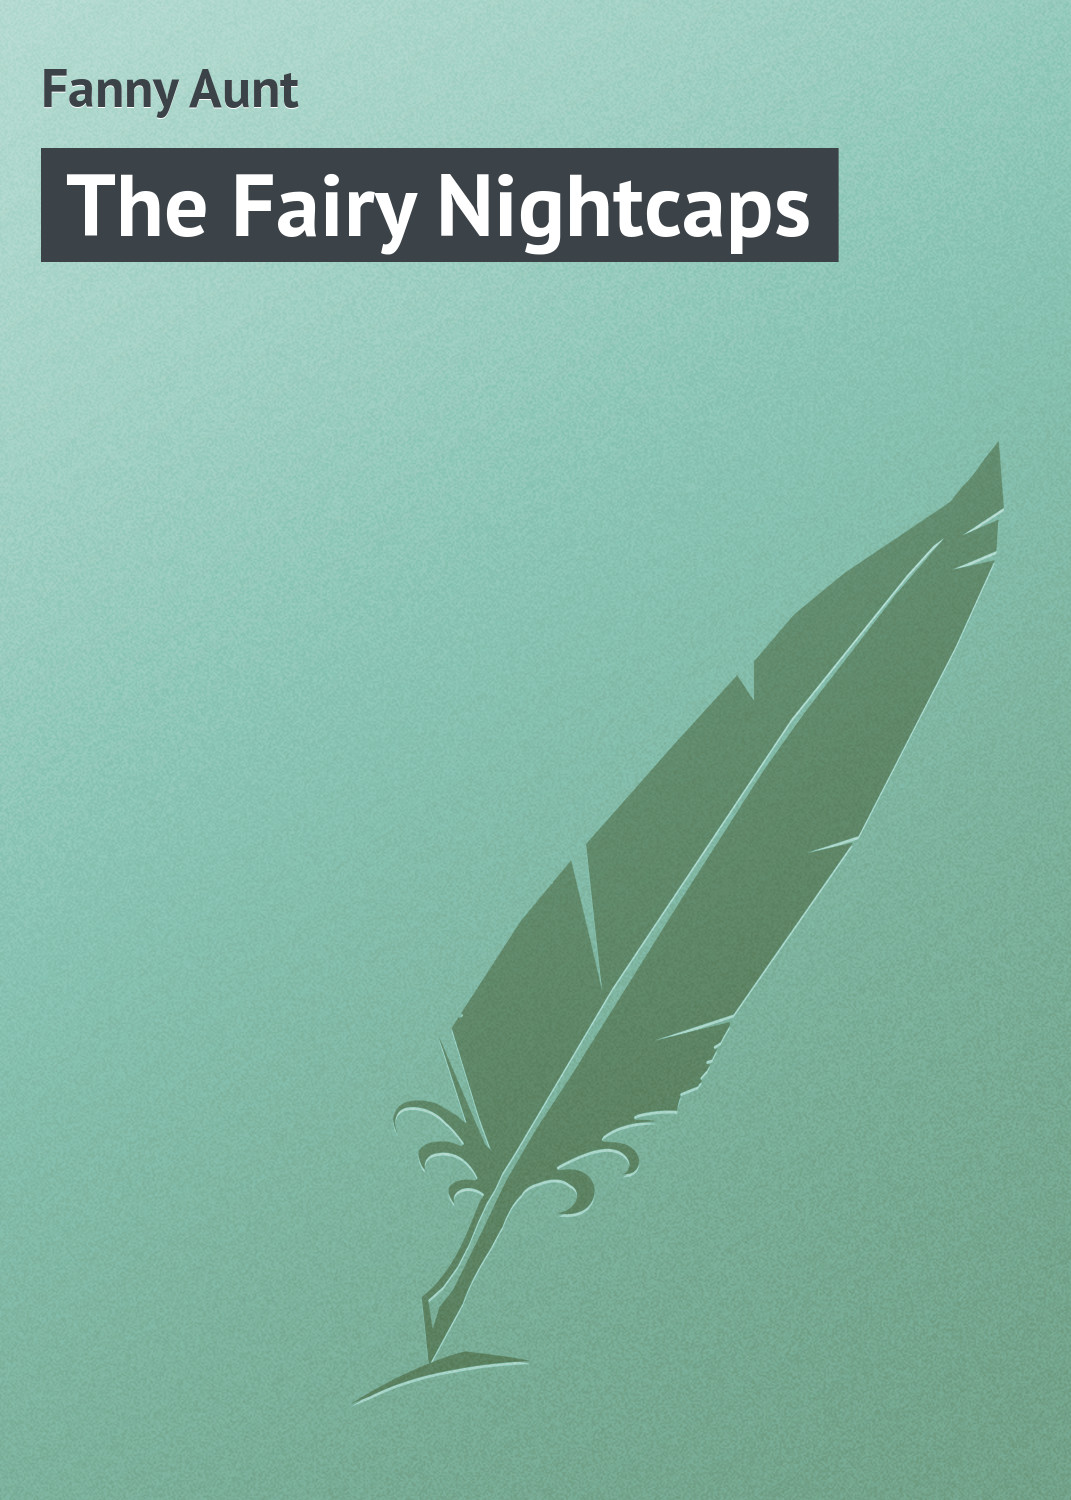 Книга The Fairy Nightcaps из серии , созданная Aunt Fanny, может относится к жанру Зарубежная классика, Зарубежные детские книги, Иностранные языки. Стоимость электронной книги The Fairy Nightcaps с идентификатором 23168779 составляет 5.99 руб.